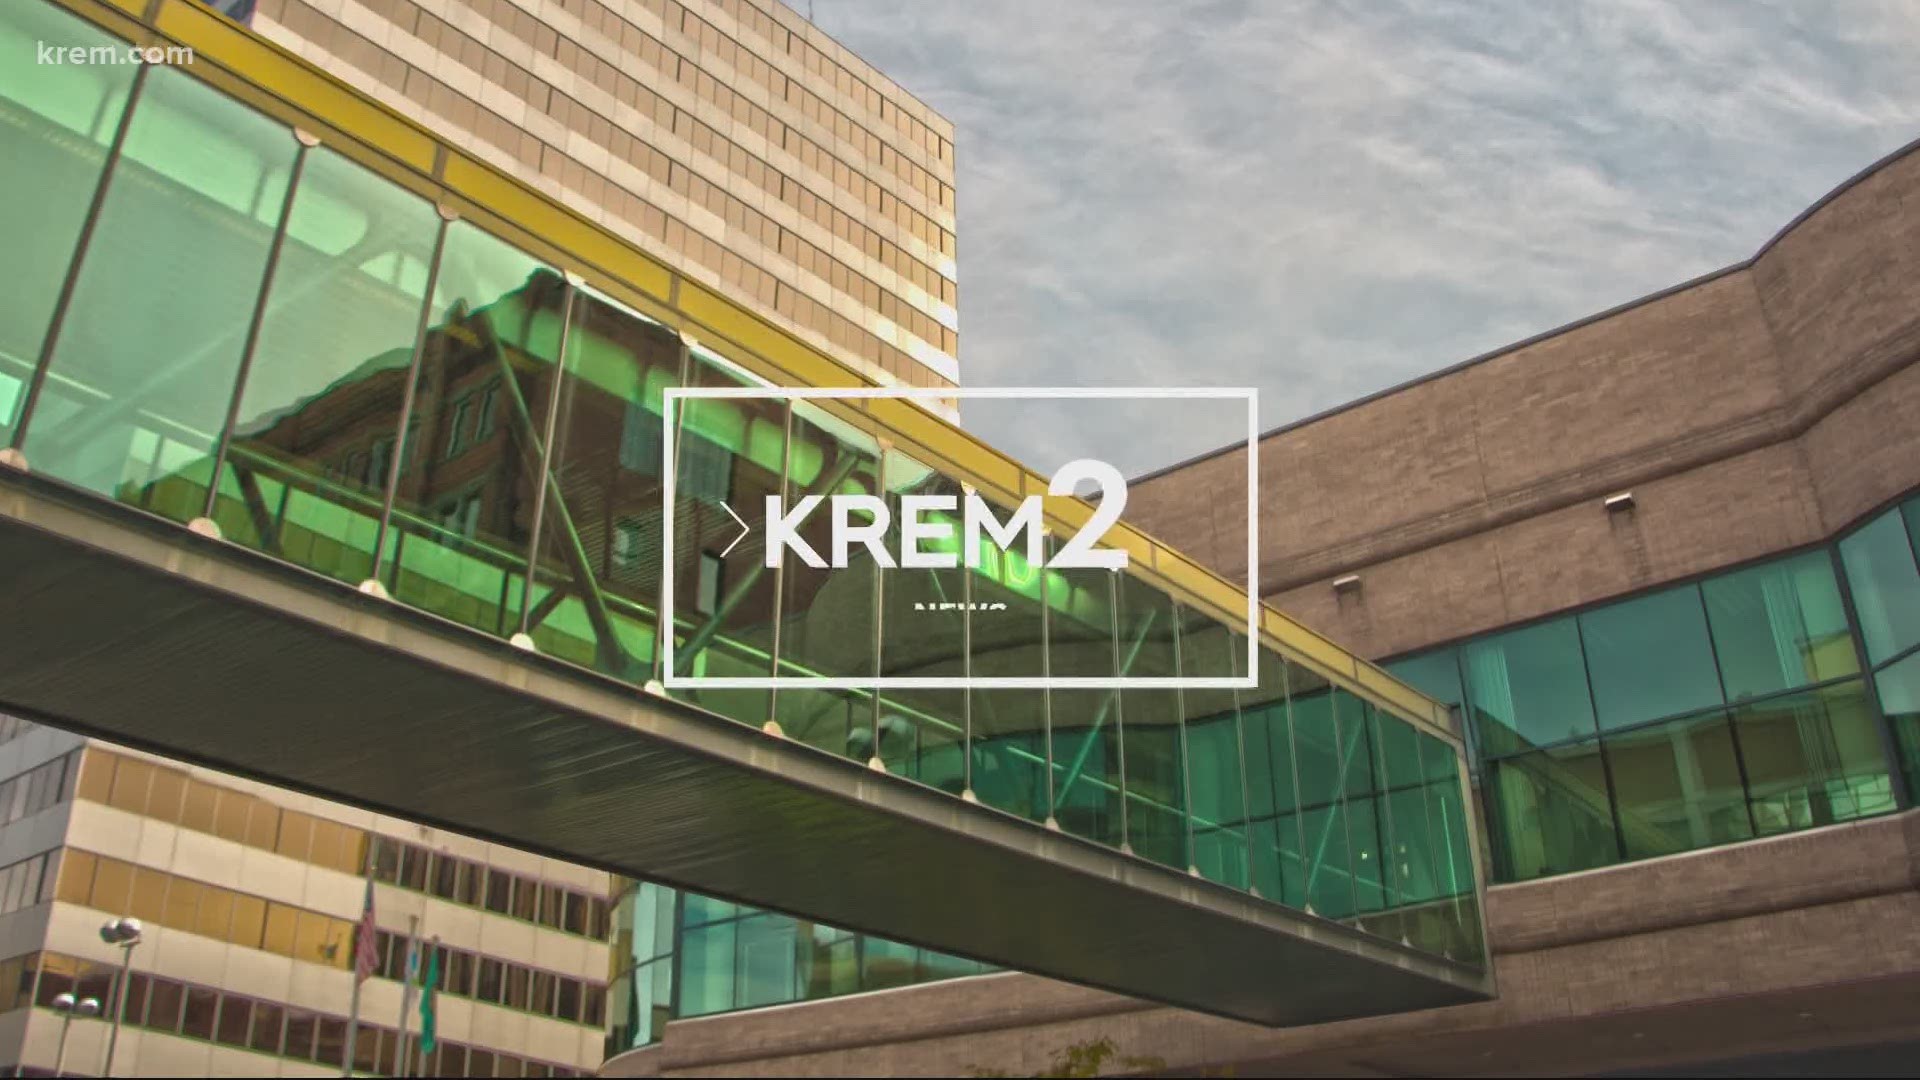 KREM 2 News headlines at 6 p.m. on August 5, 2020.